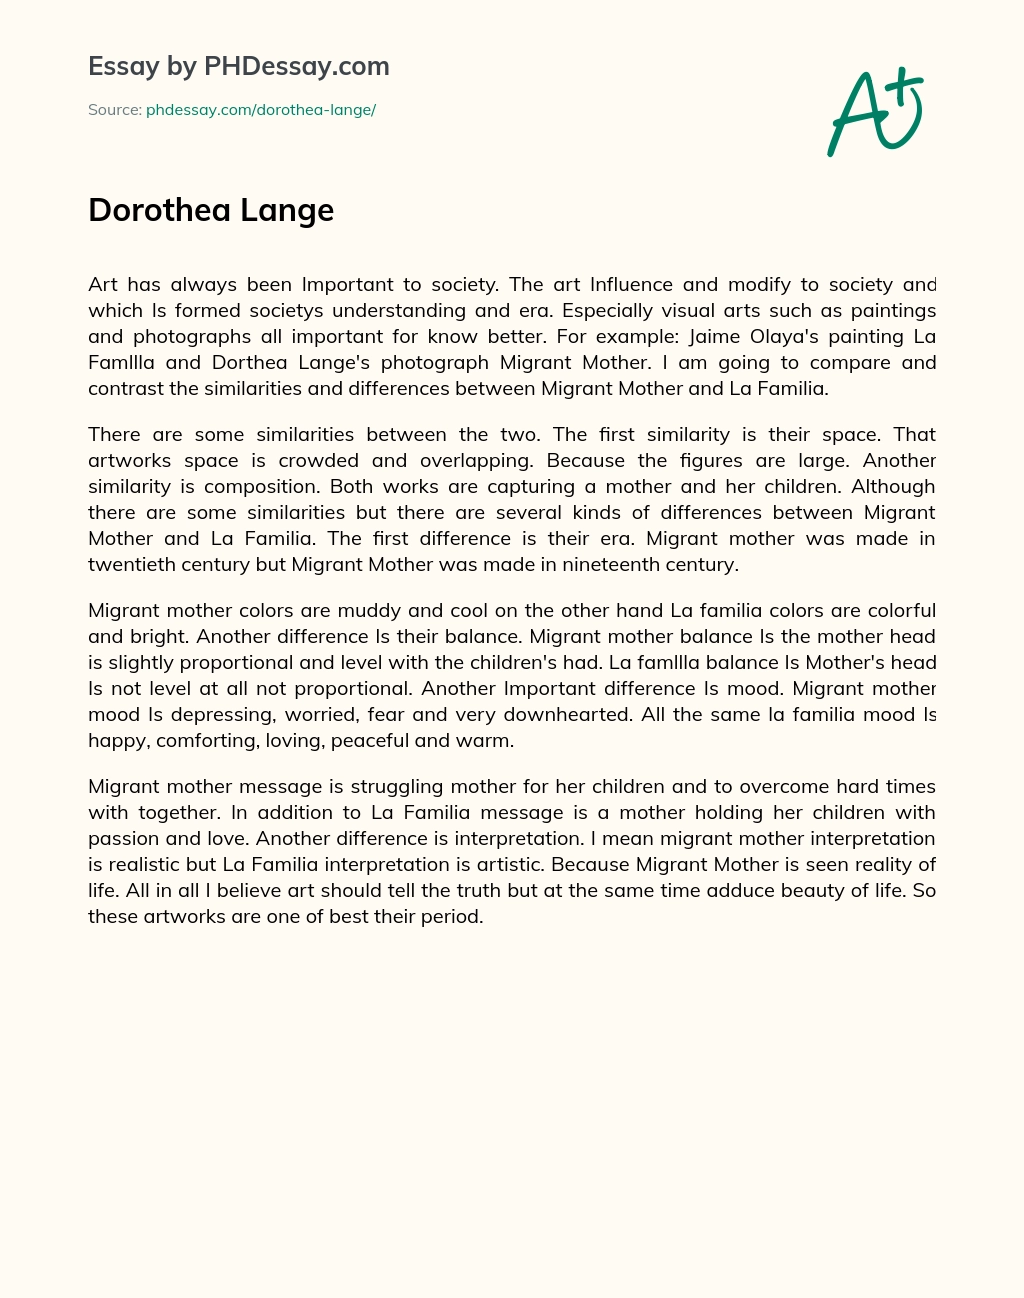 Dorothea Lange essay